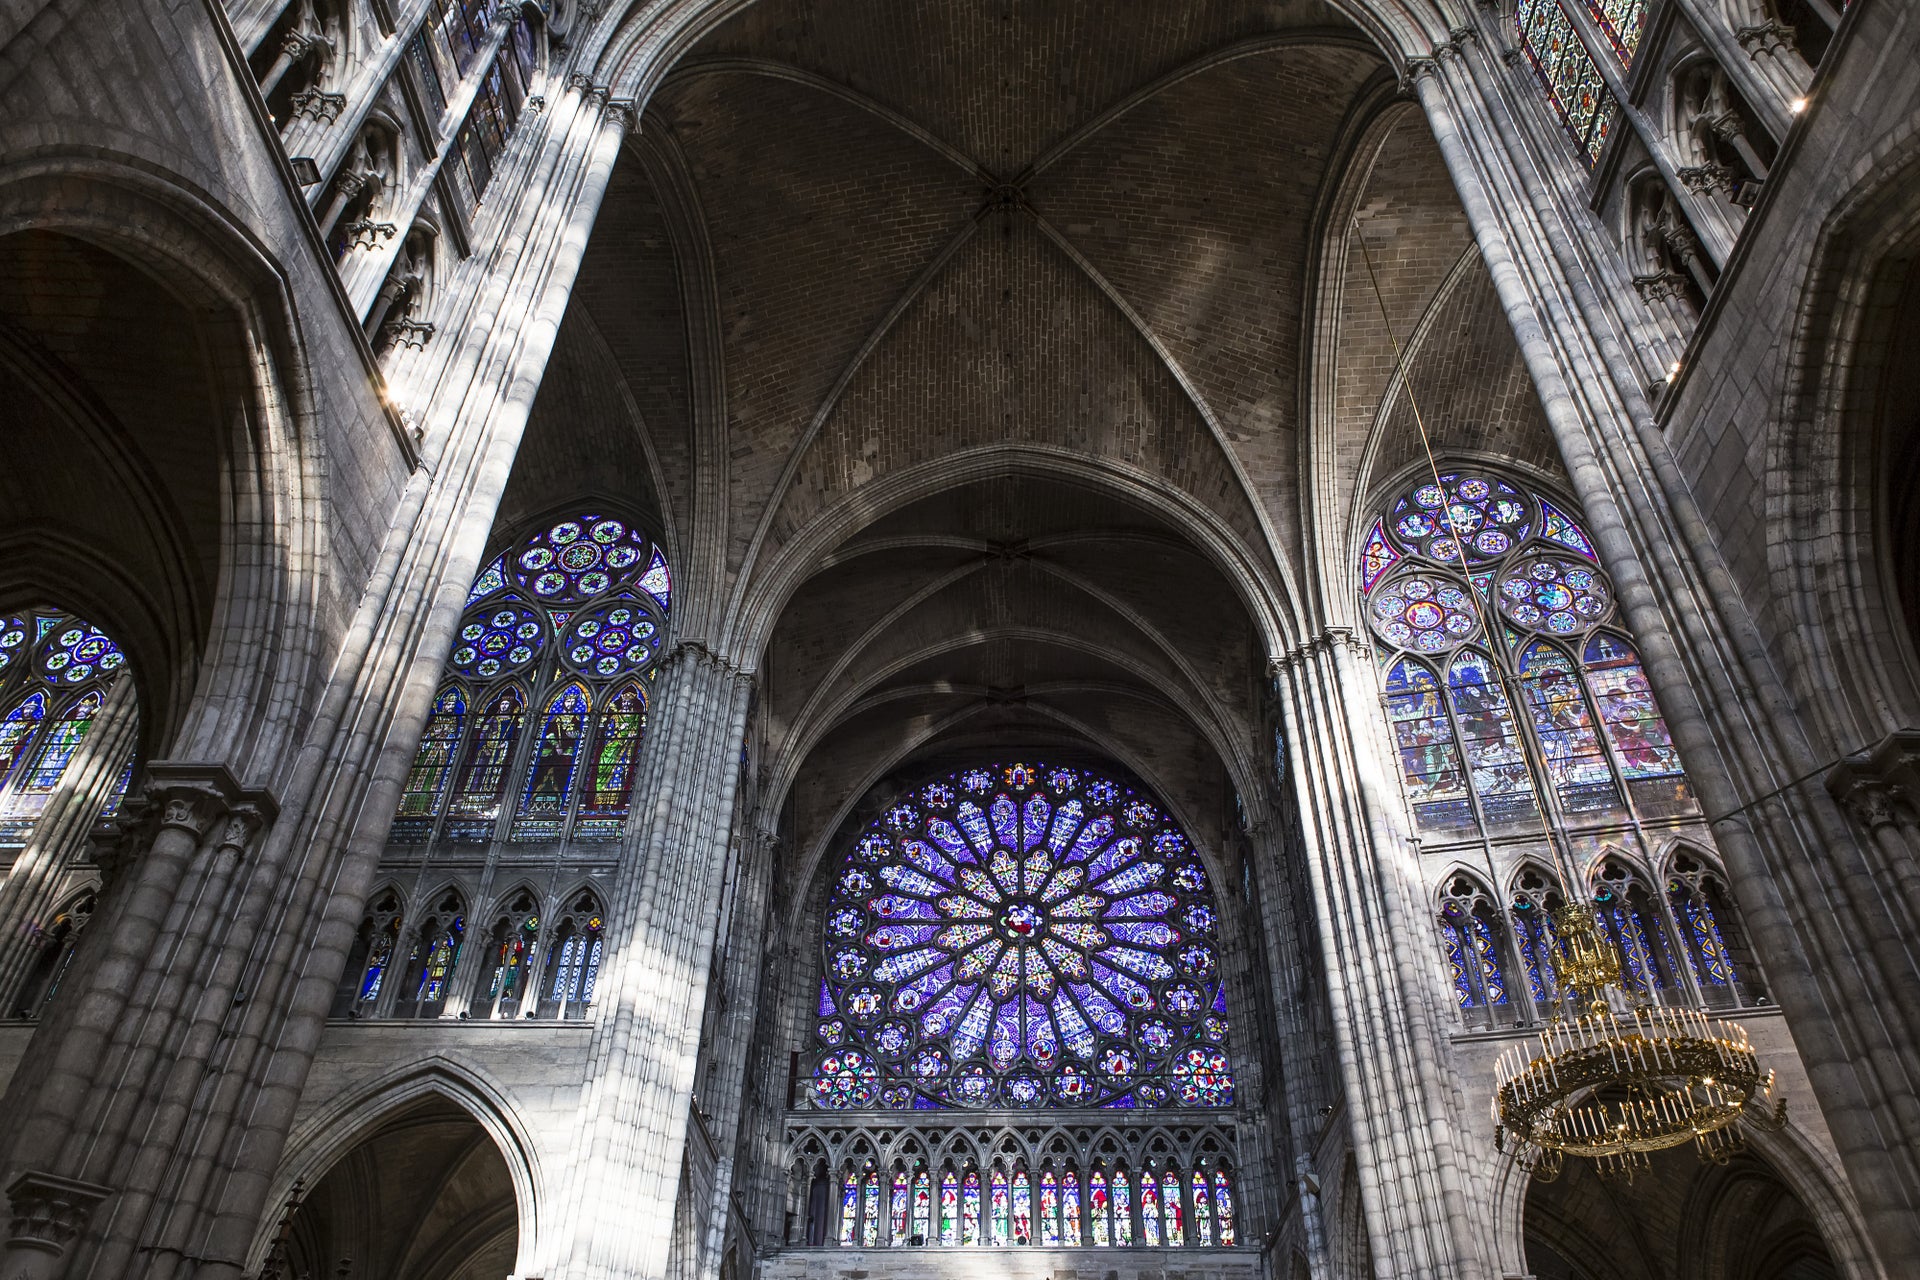 Ingresso da Basílica de Saint-Denis